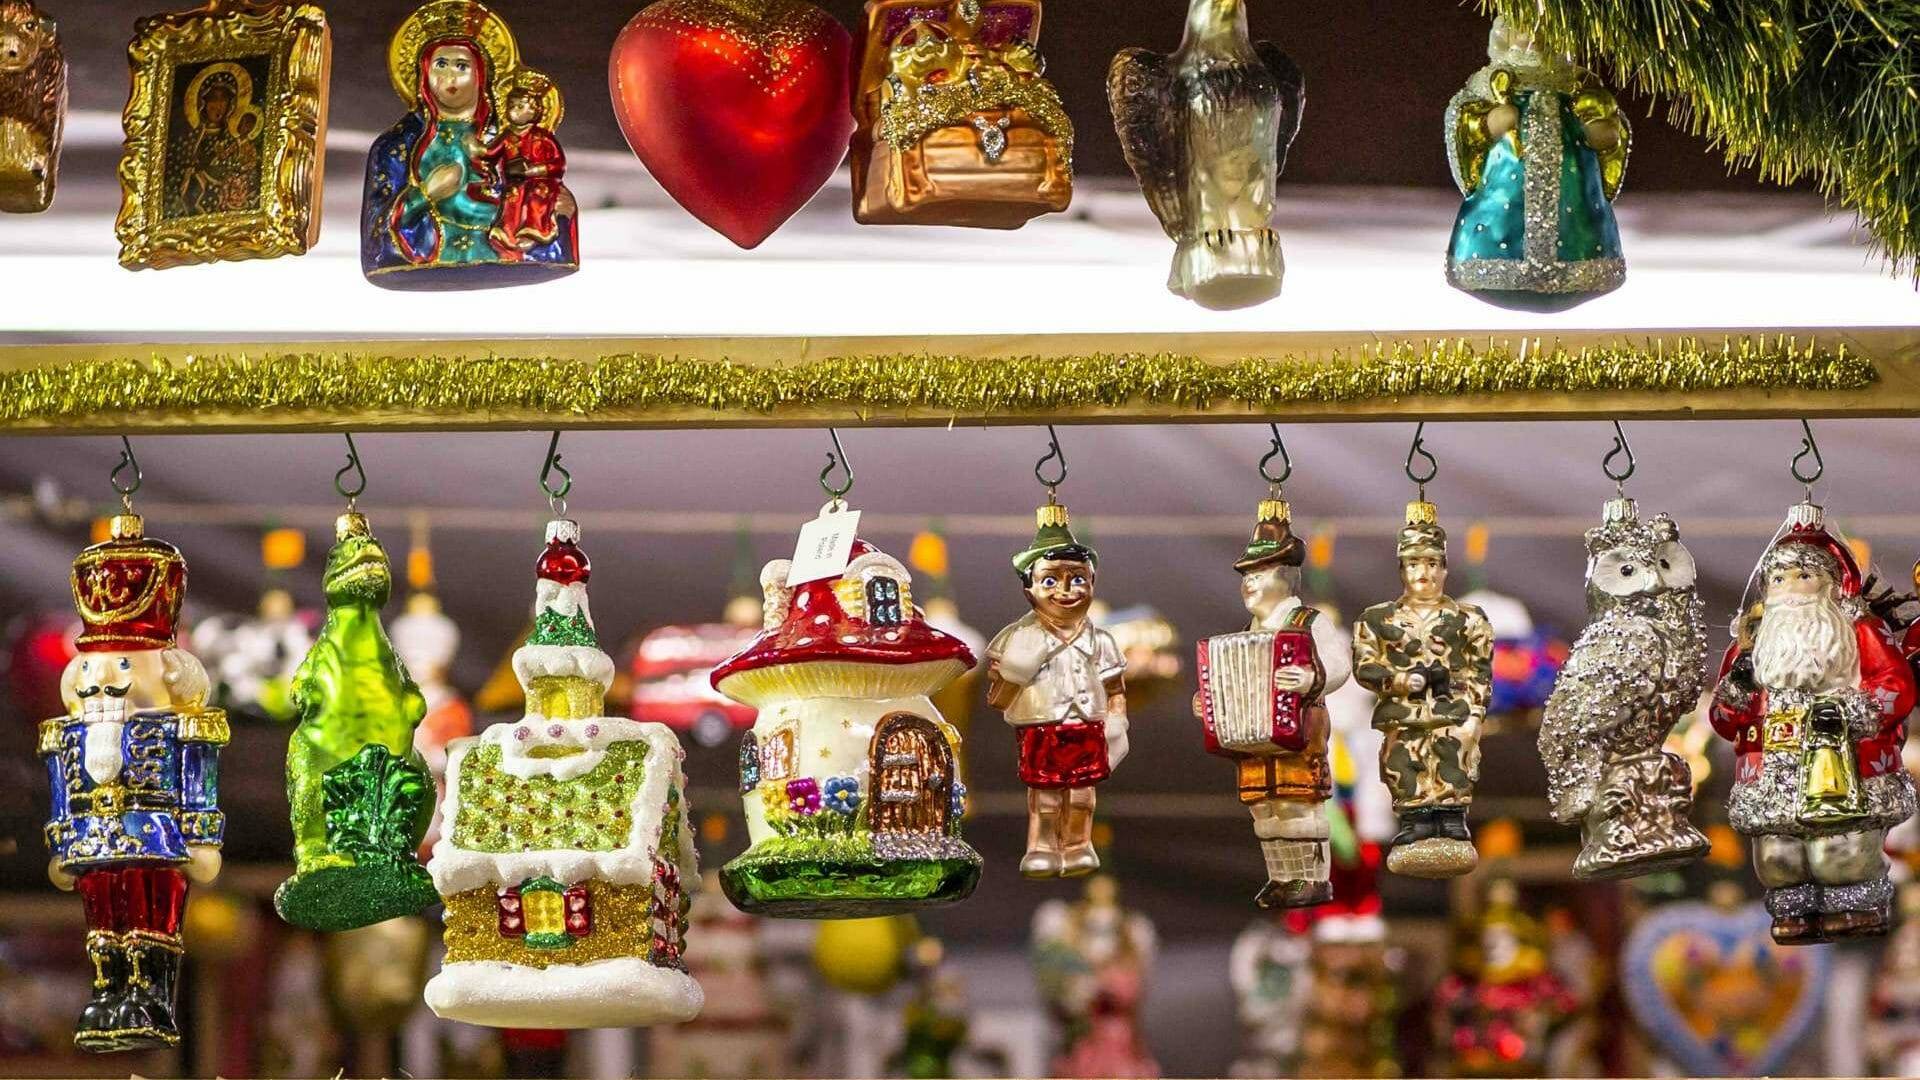 En el mercadillo encontrarás las piezas de decoración navideñas más originales.